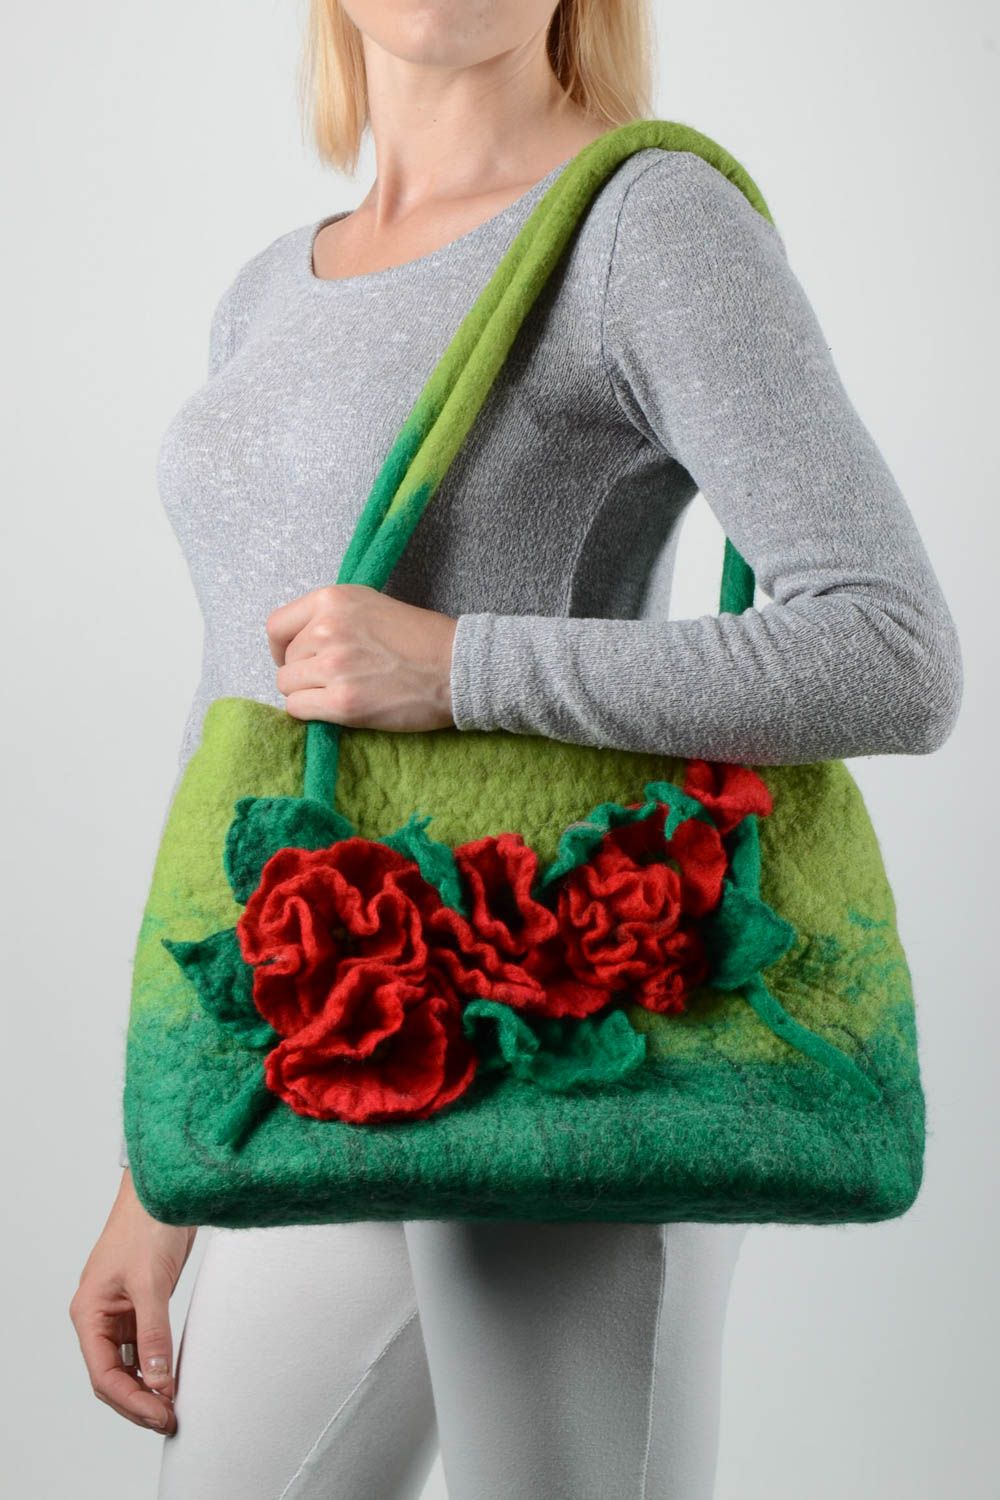 Сумка ручной работы женская сумка зеленая на плечо из шерсти сумка валяние фото 1